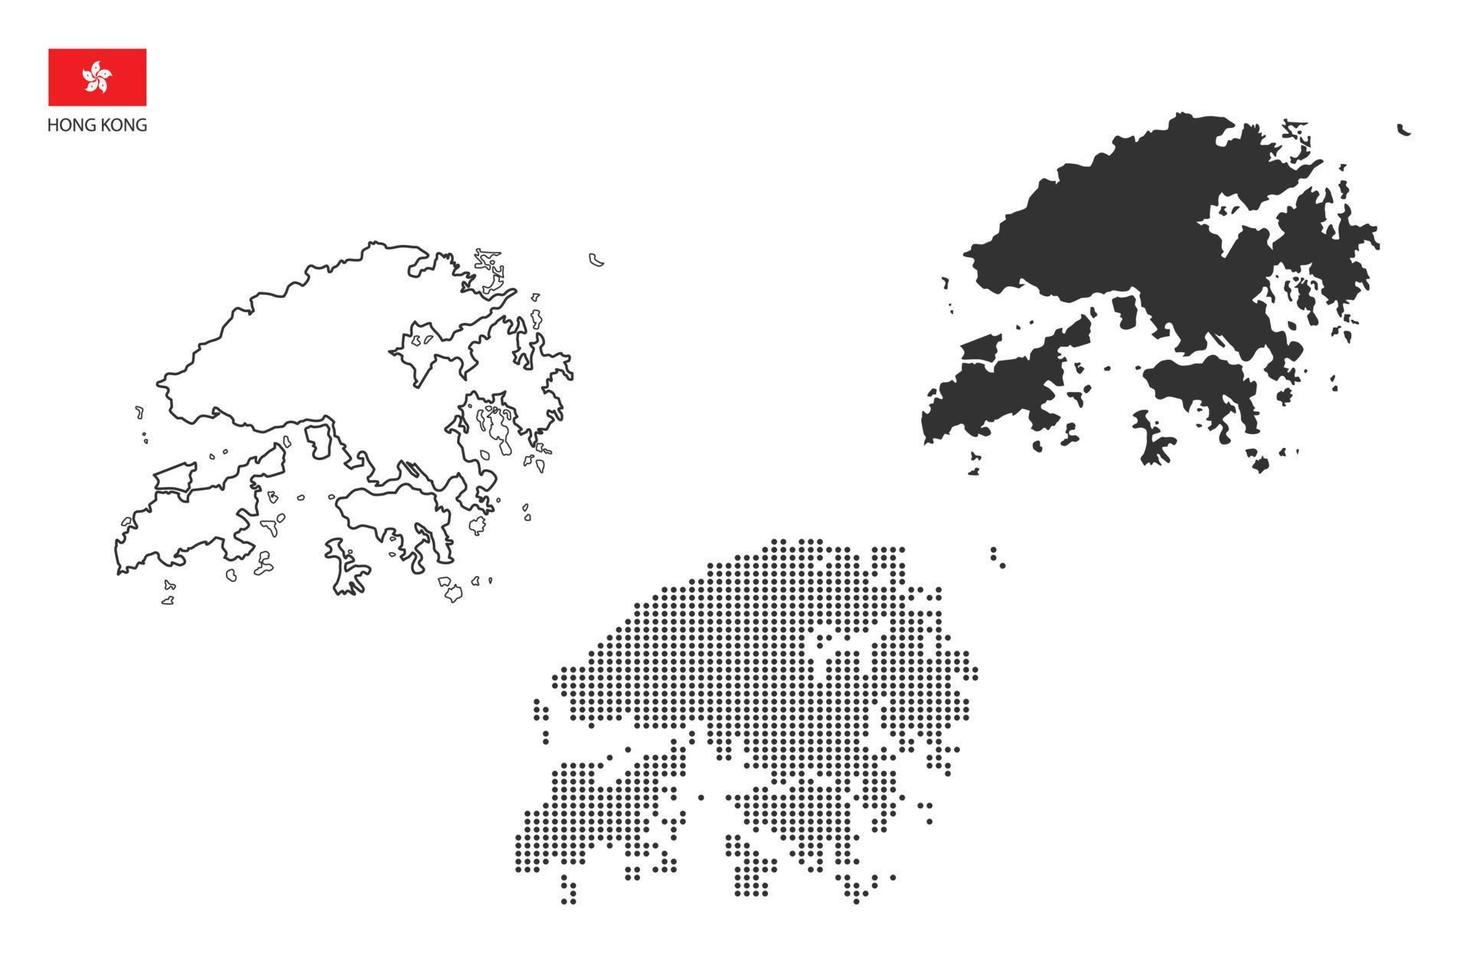 3 versões do vetor da cidade do mapa de hong kong pelo estilo de simplicidade de contorno preto fino, estilo de ponto preto e estilo de sombra escura. tudo no fundo branco.